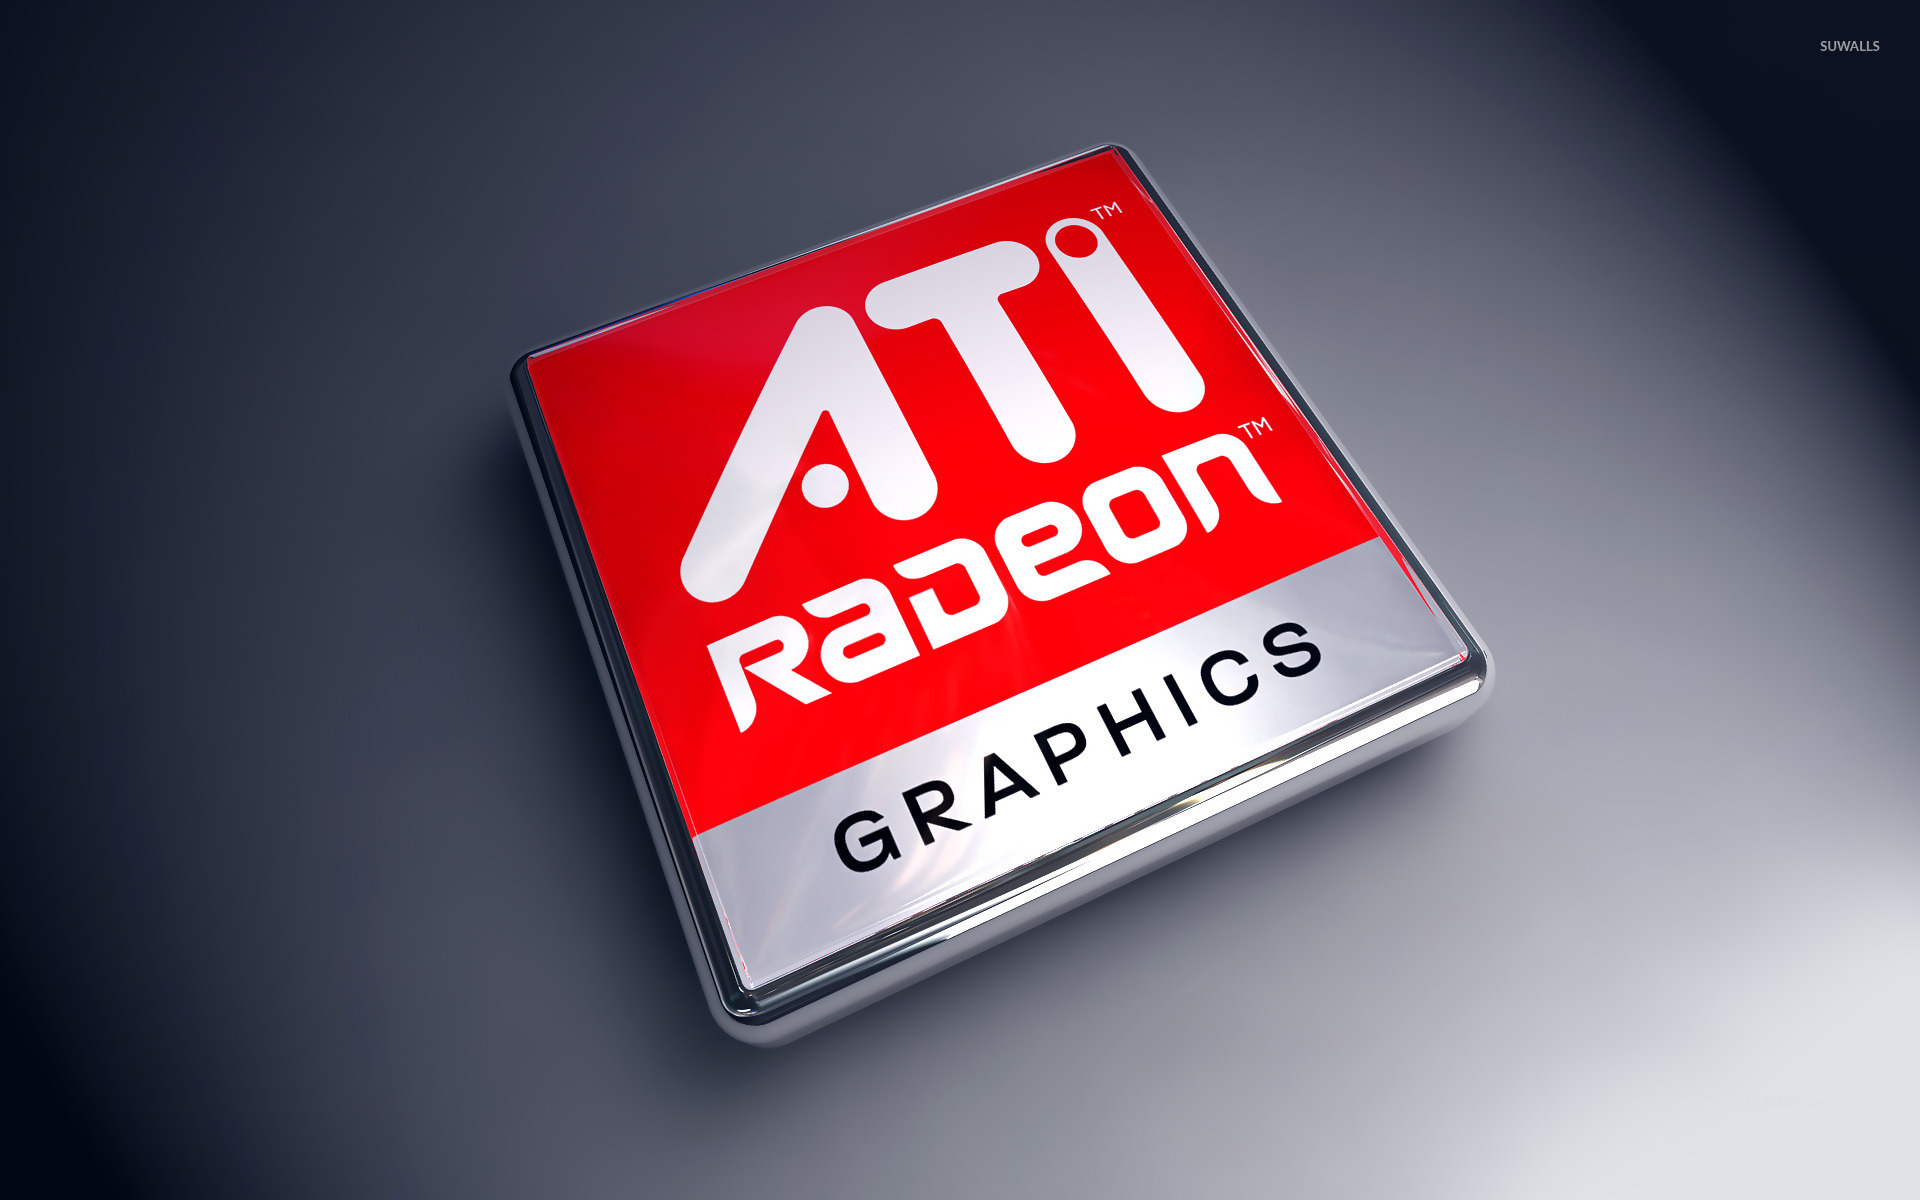 Amd Radeon Wallpaper Computer Wallpapers